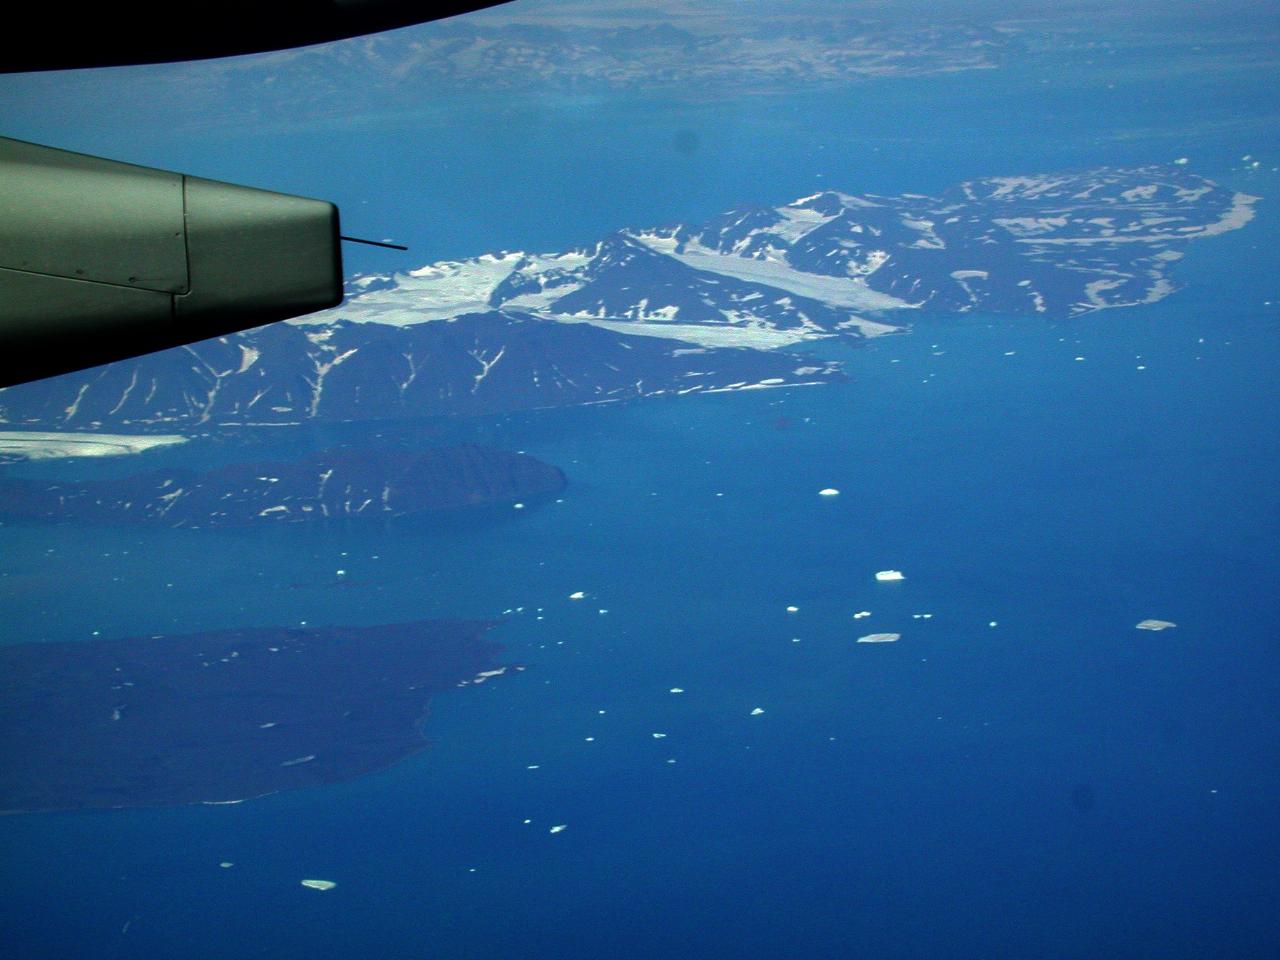 KPLU Viking Jazz: Greenland, with fresh icebergs